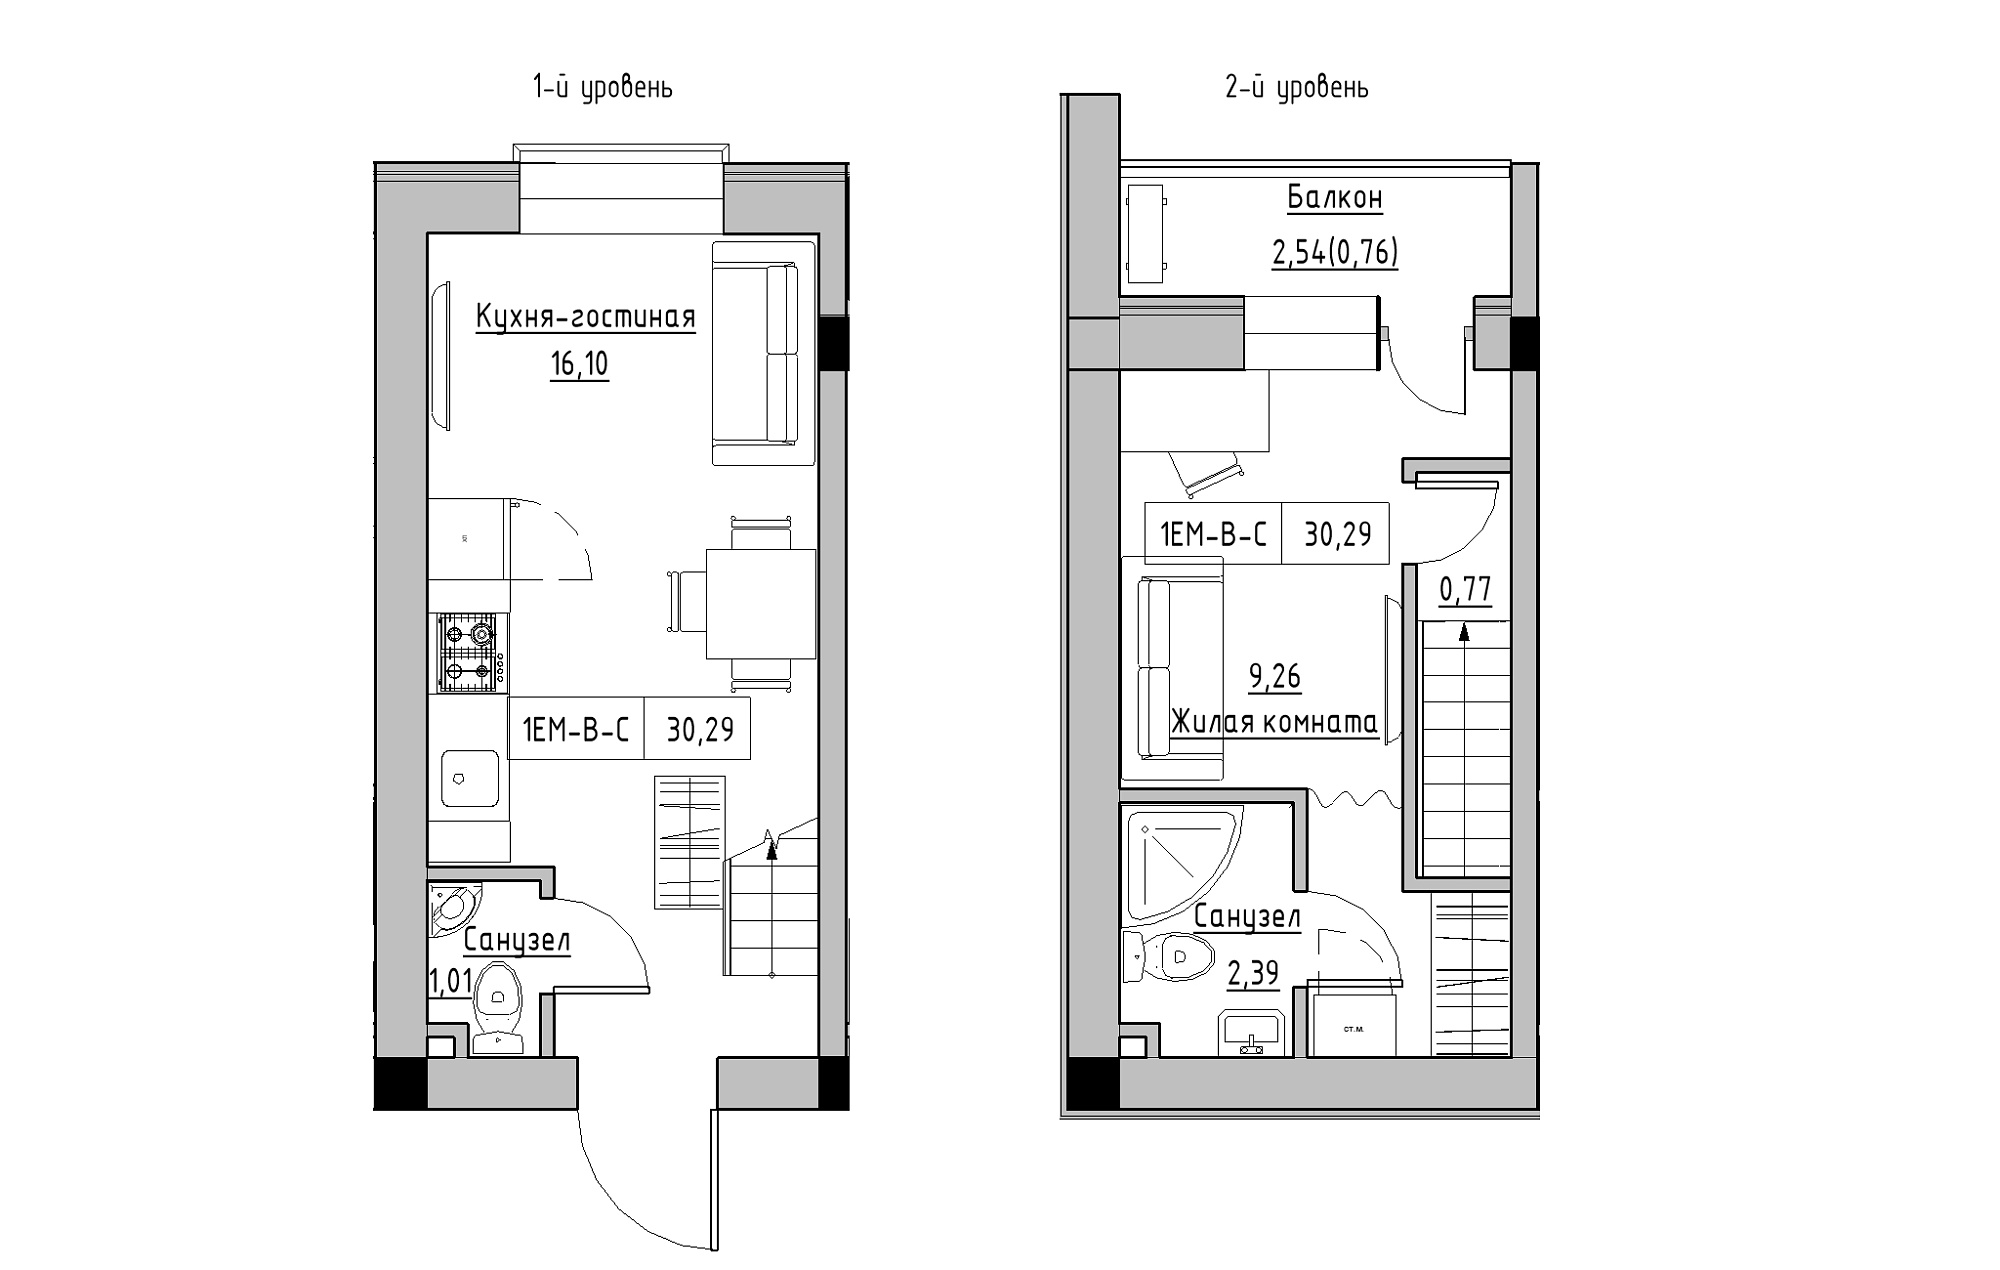 Planning 2-lvl flats area 30.29m2, KS-018-05/0009.